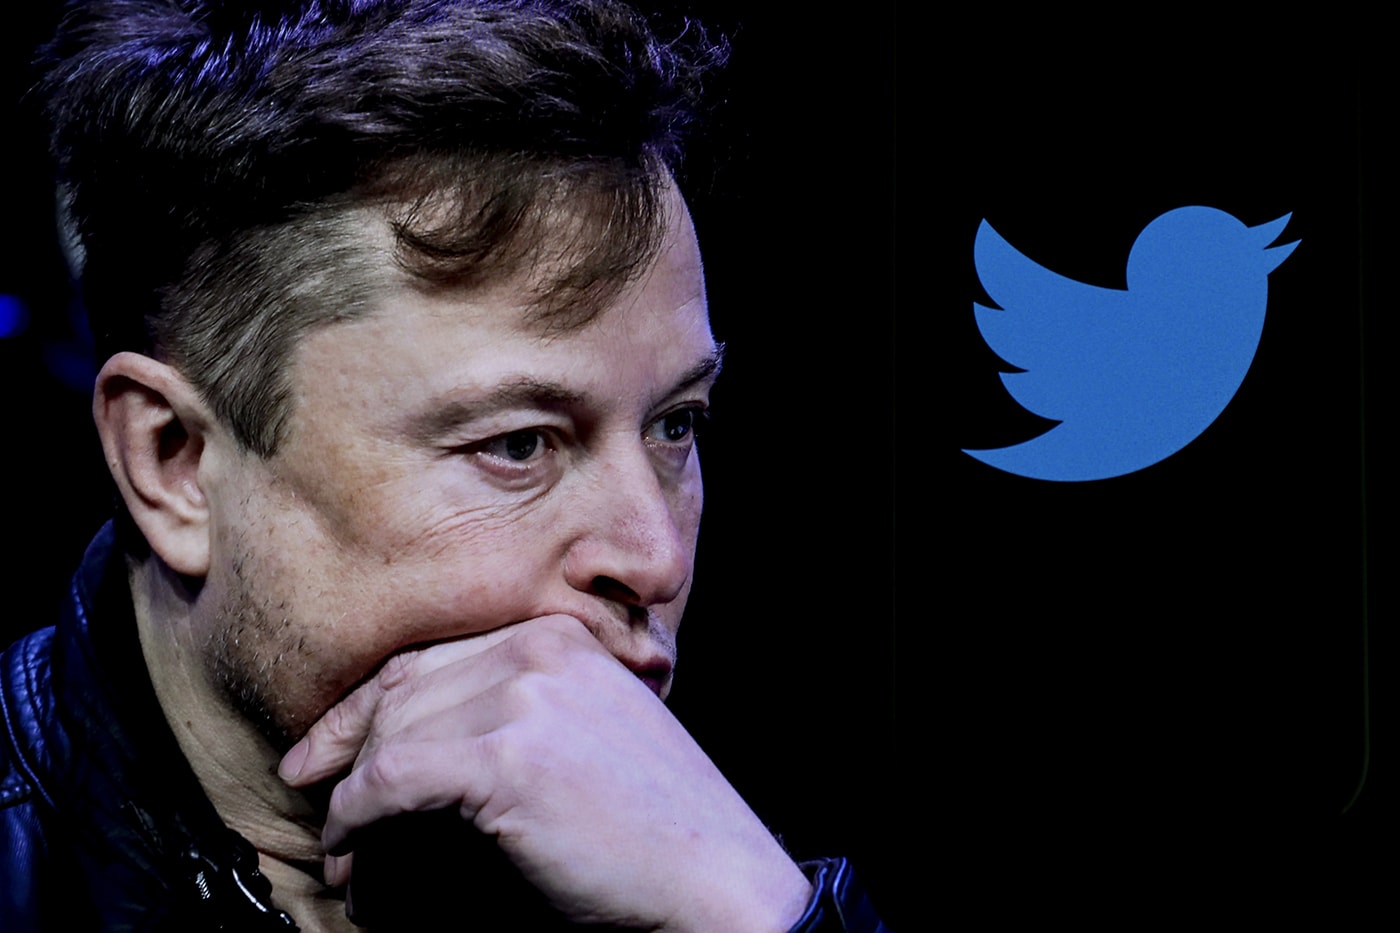 イーロンマスク買収後からツイッターのヘイトスピーチ激増と報告される Twitter Hate Speech Increases Drastically Elon Musk Takeover Info